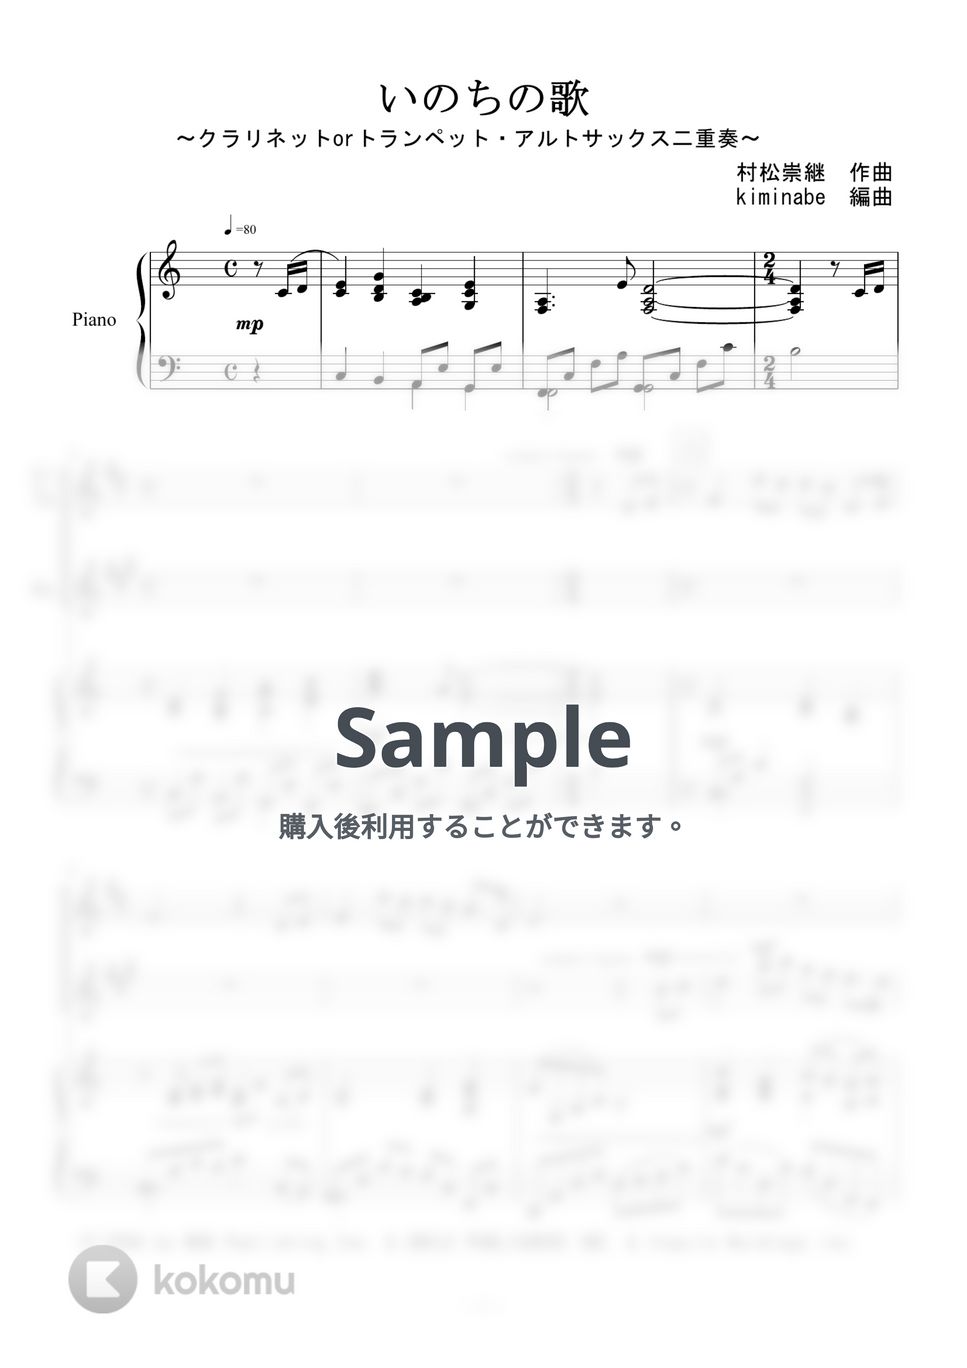 竹内まりや - いのちの歌 (クラリネットorトランペット・アルトサックス二重奏) by kiminabe